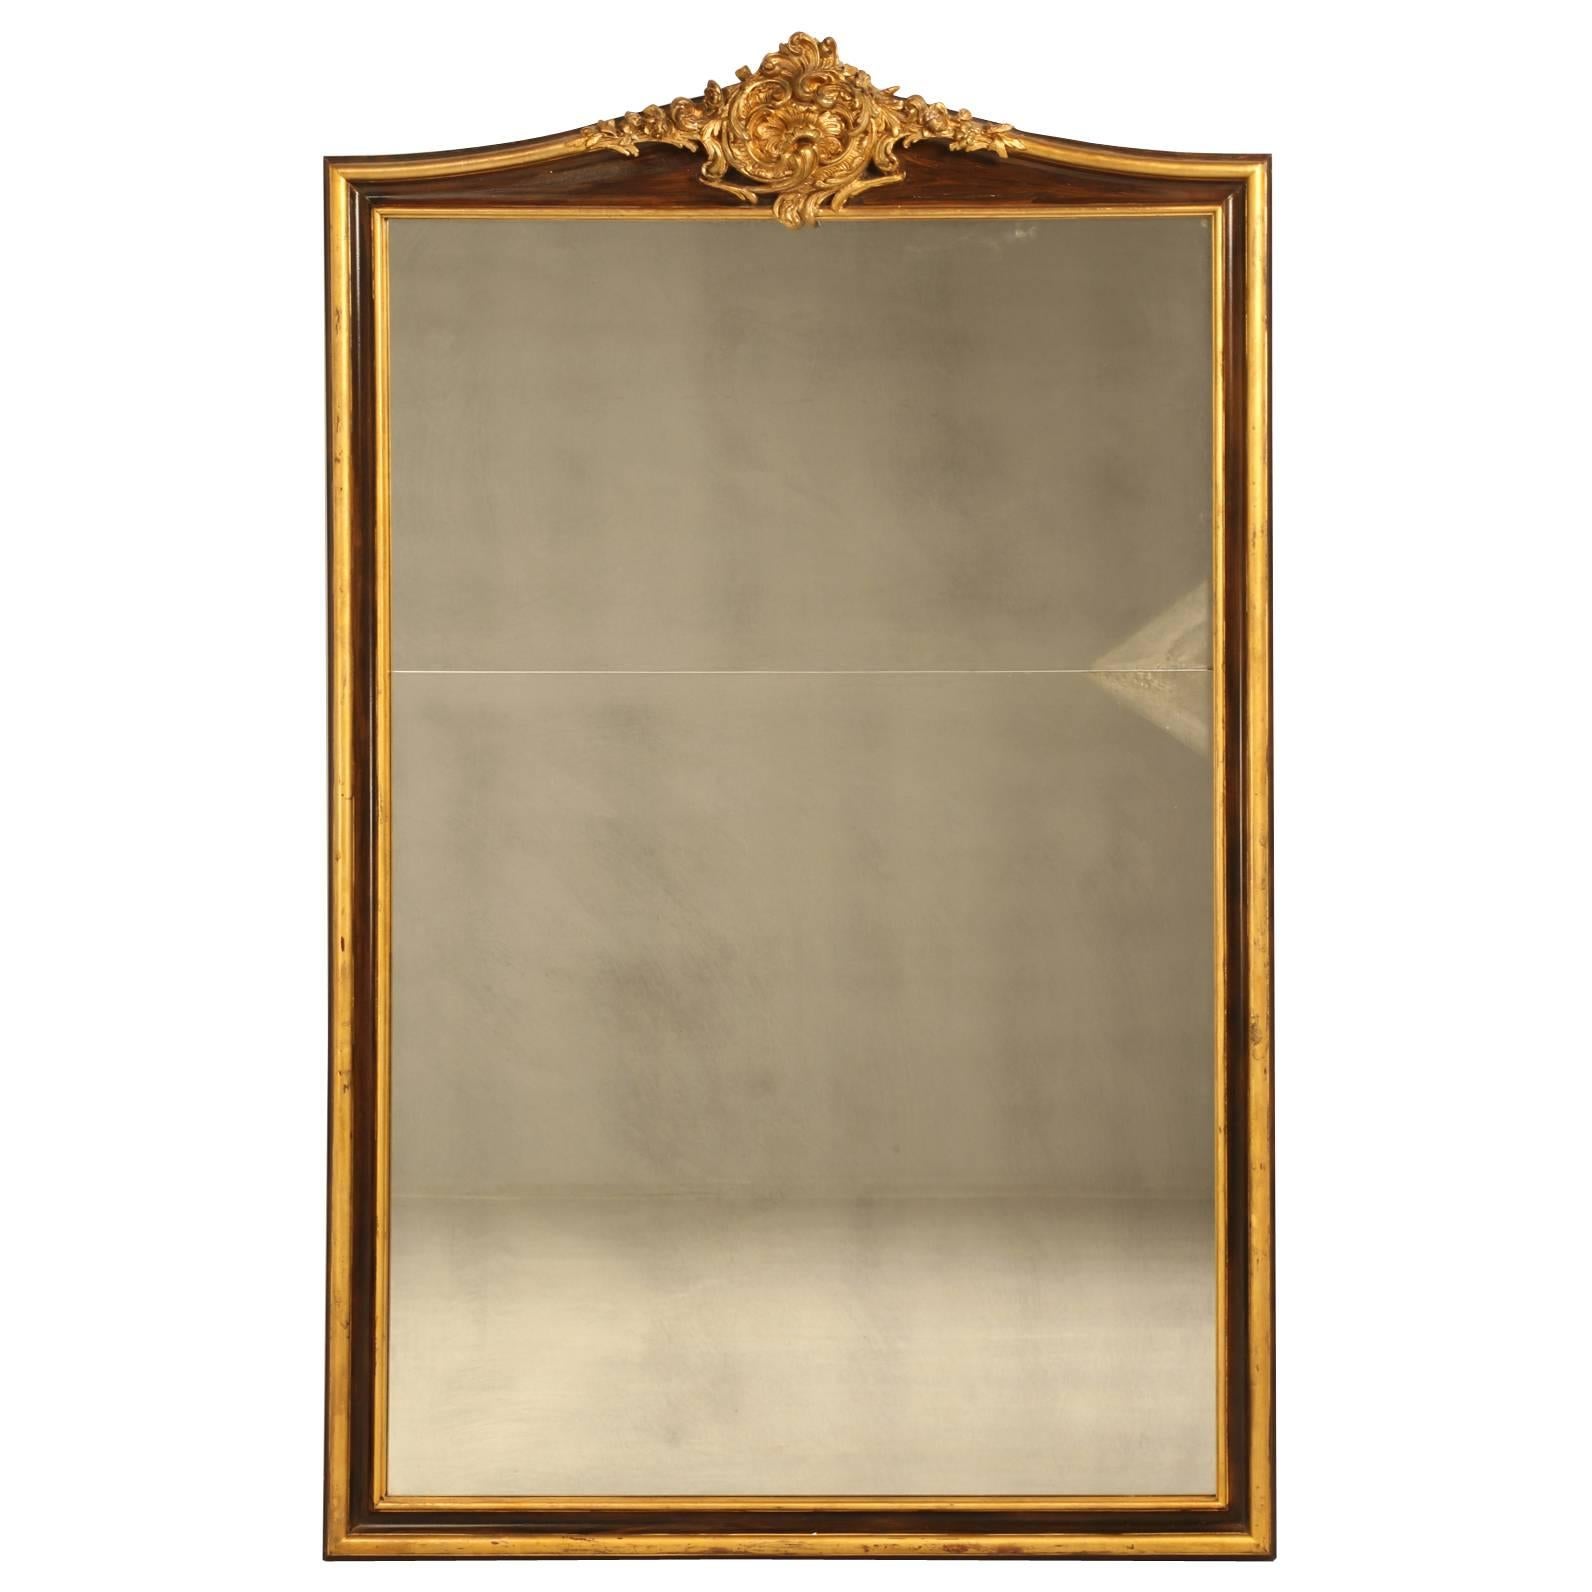 Miroir français à grande échelle avec cadre sculpté à la main en feuille d'or 24 carats 